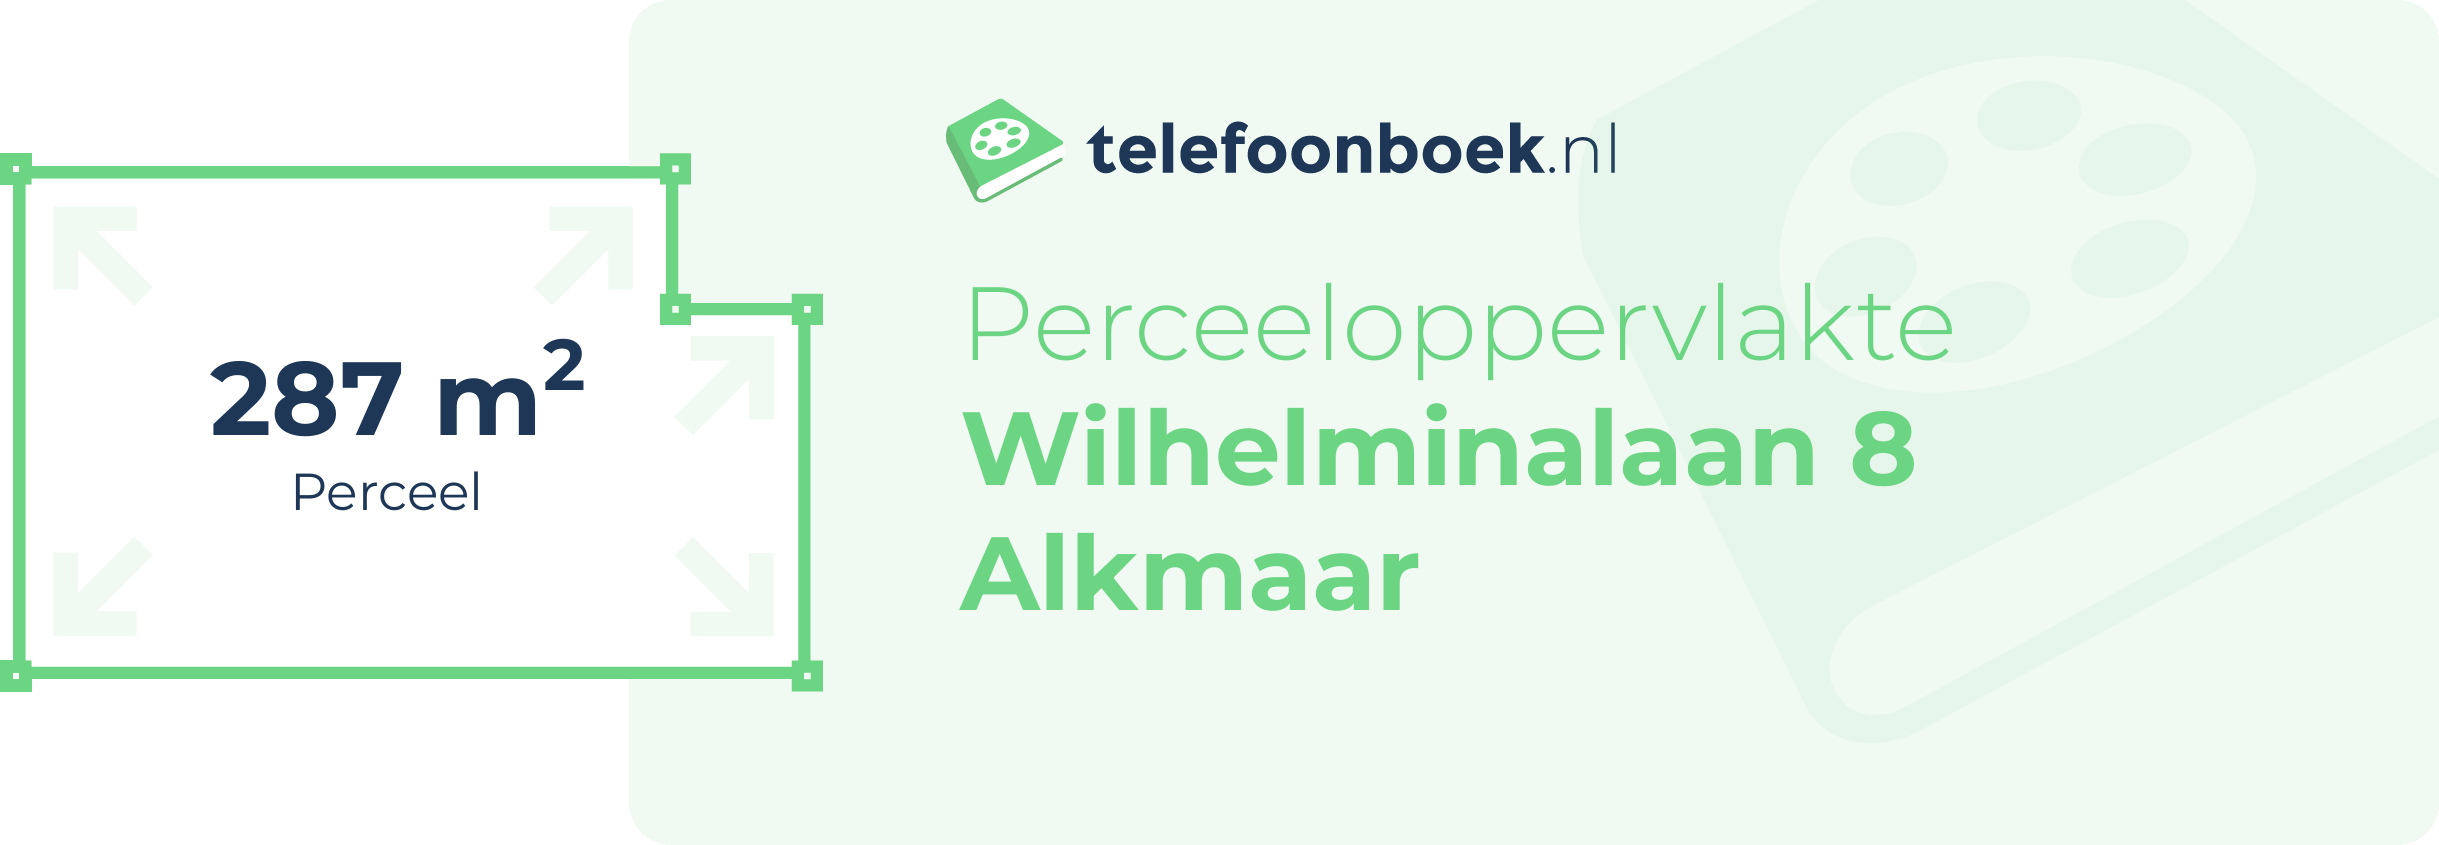 Perceeloppervlakte Wilhelminalaan 8 Alkmaar